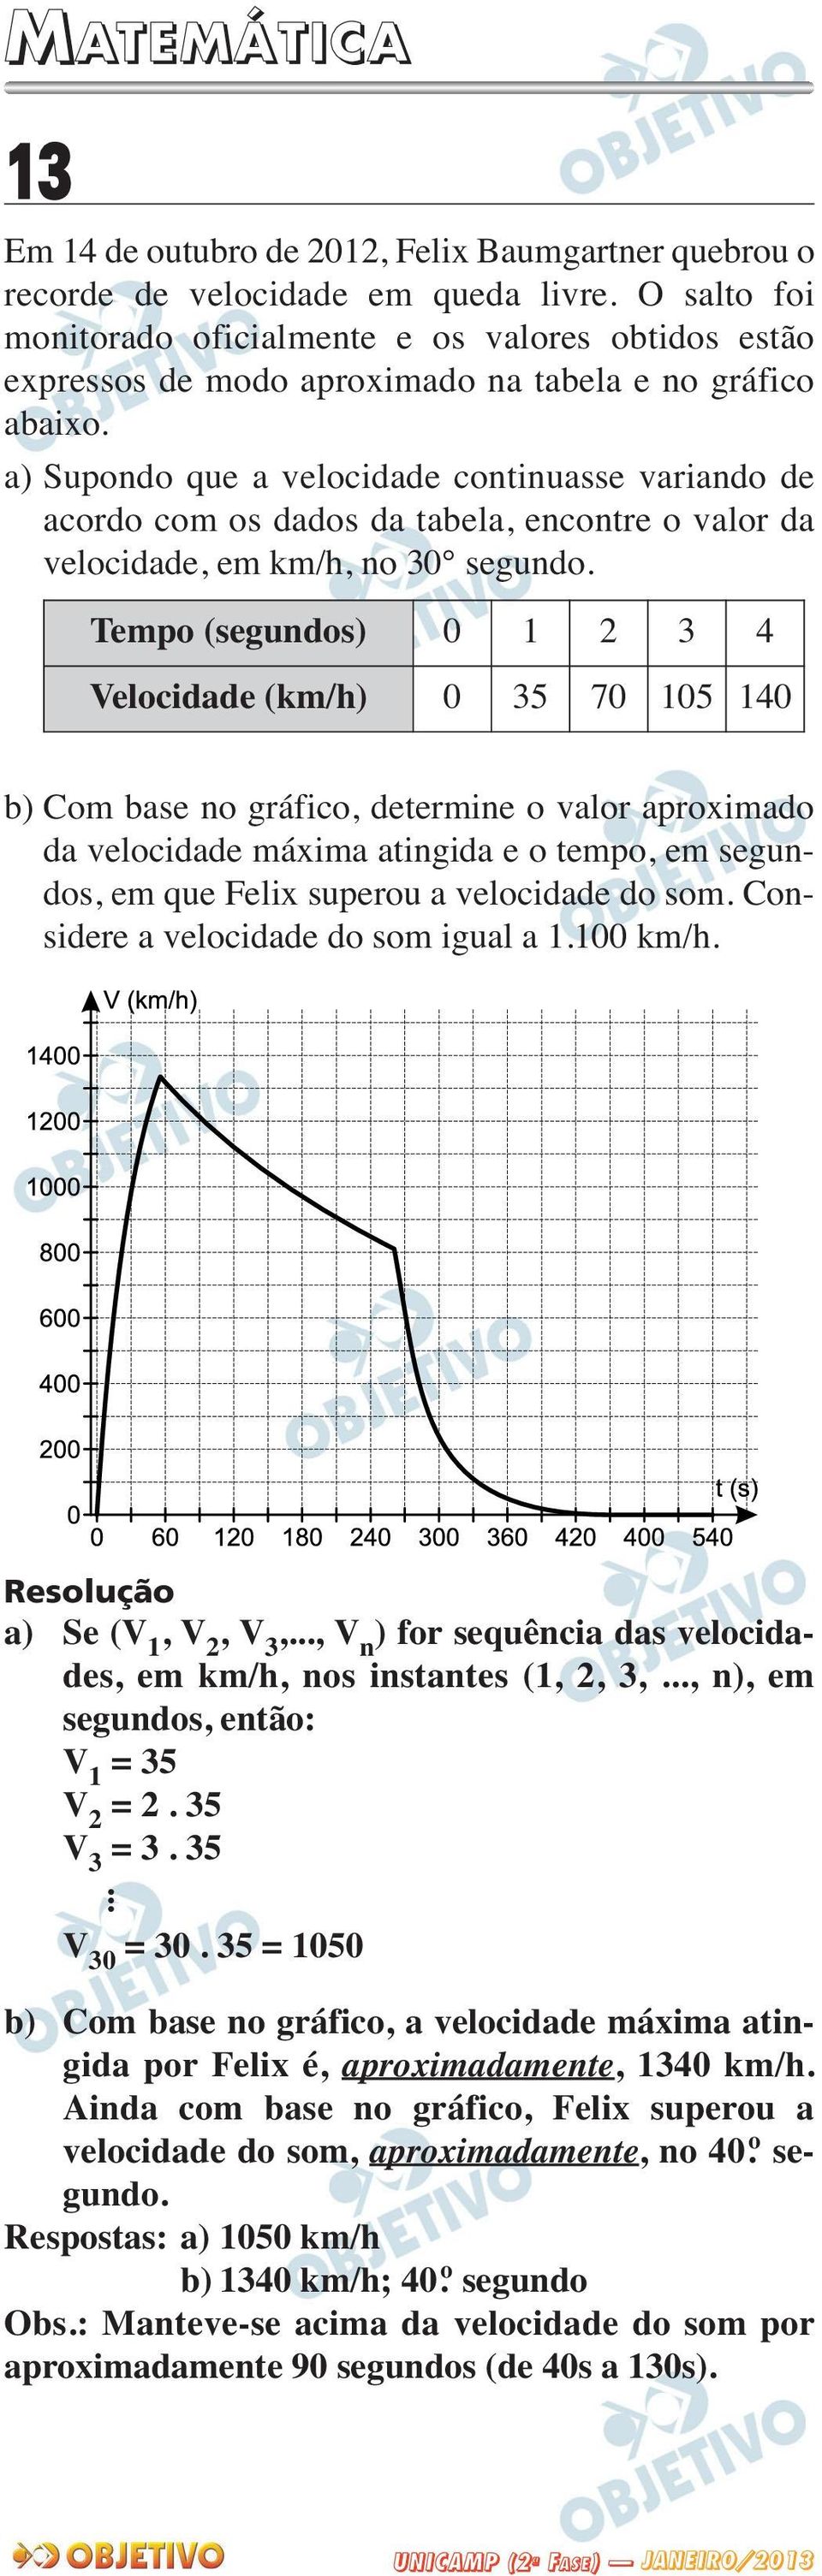 a) Supondo que a velocidade continuasse variando de acordo com os dados da tabela, encontre o valor da velocidade, em km/h, no 30 segundo.